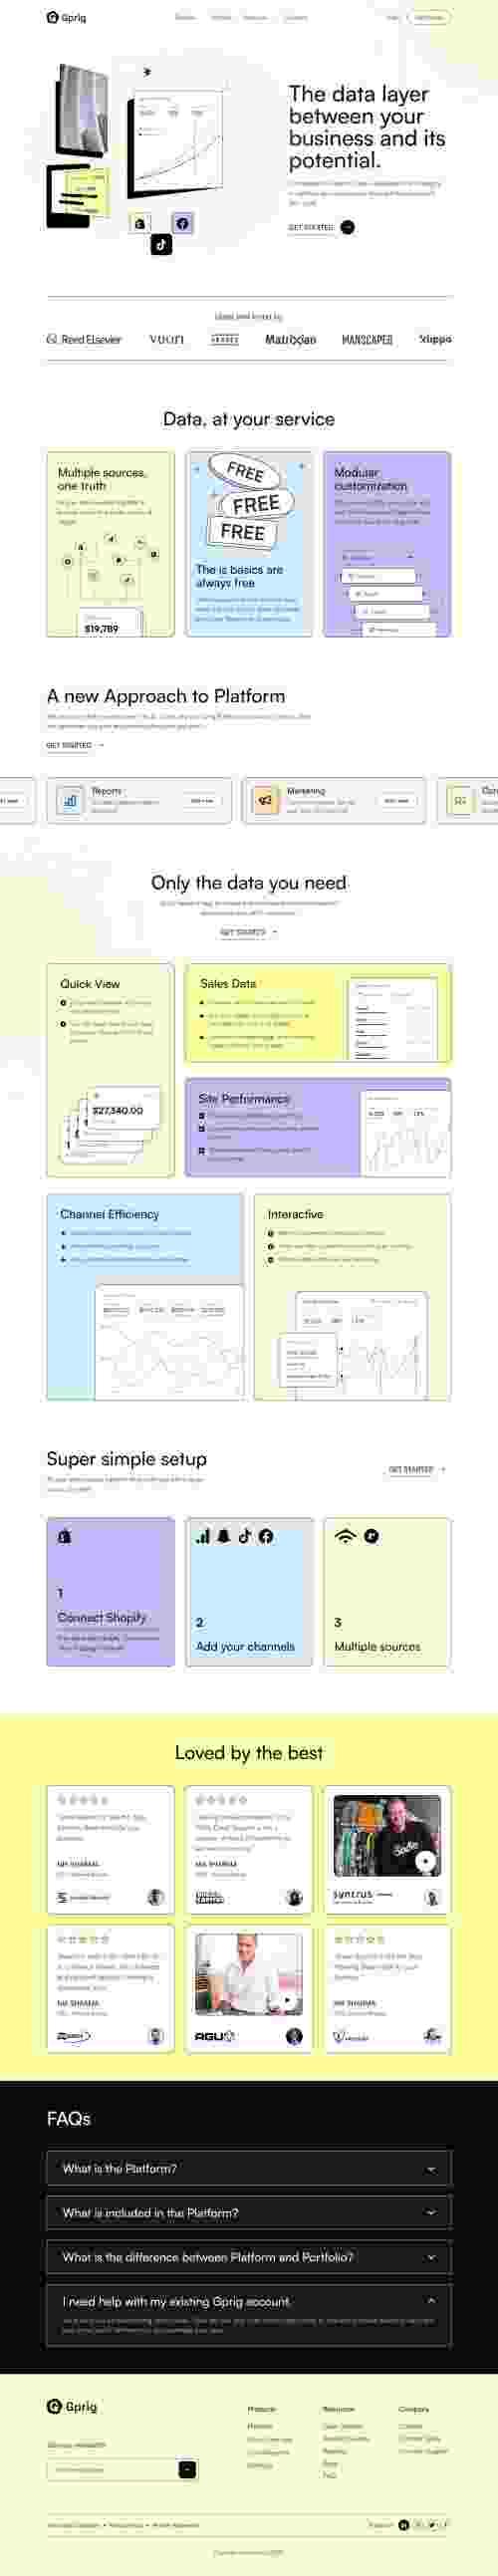 UIHut - Responsive Saas Website Design Template - 22260